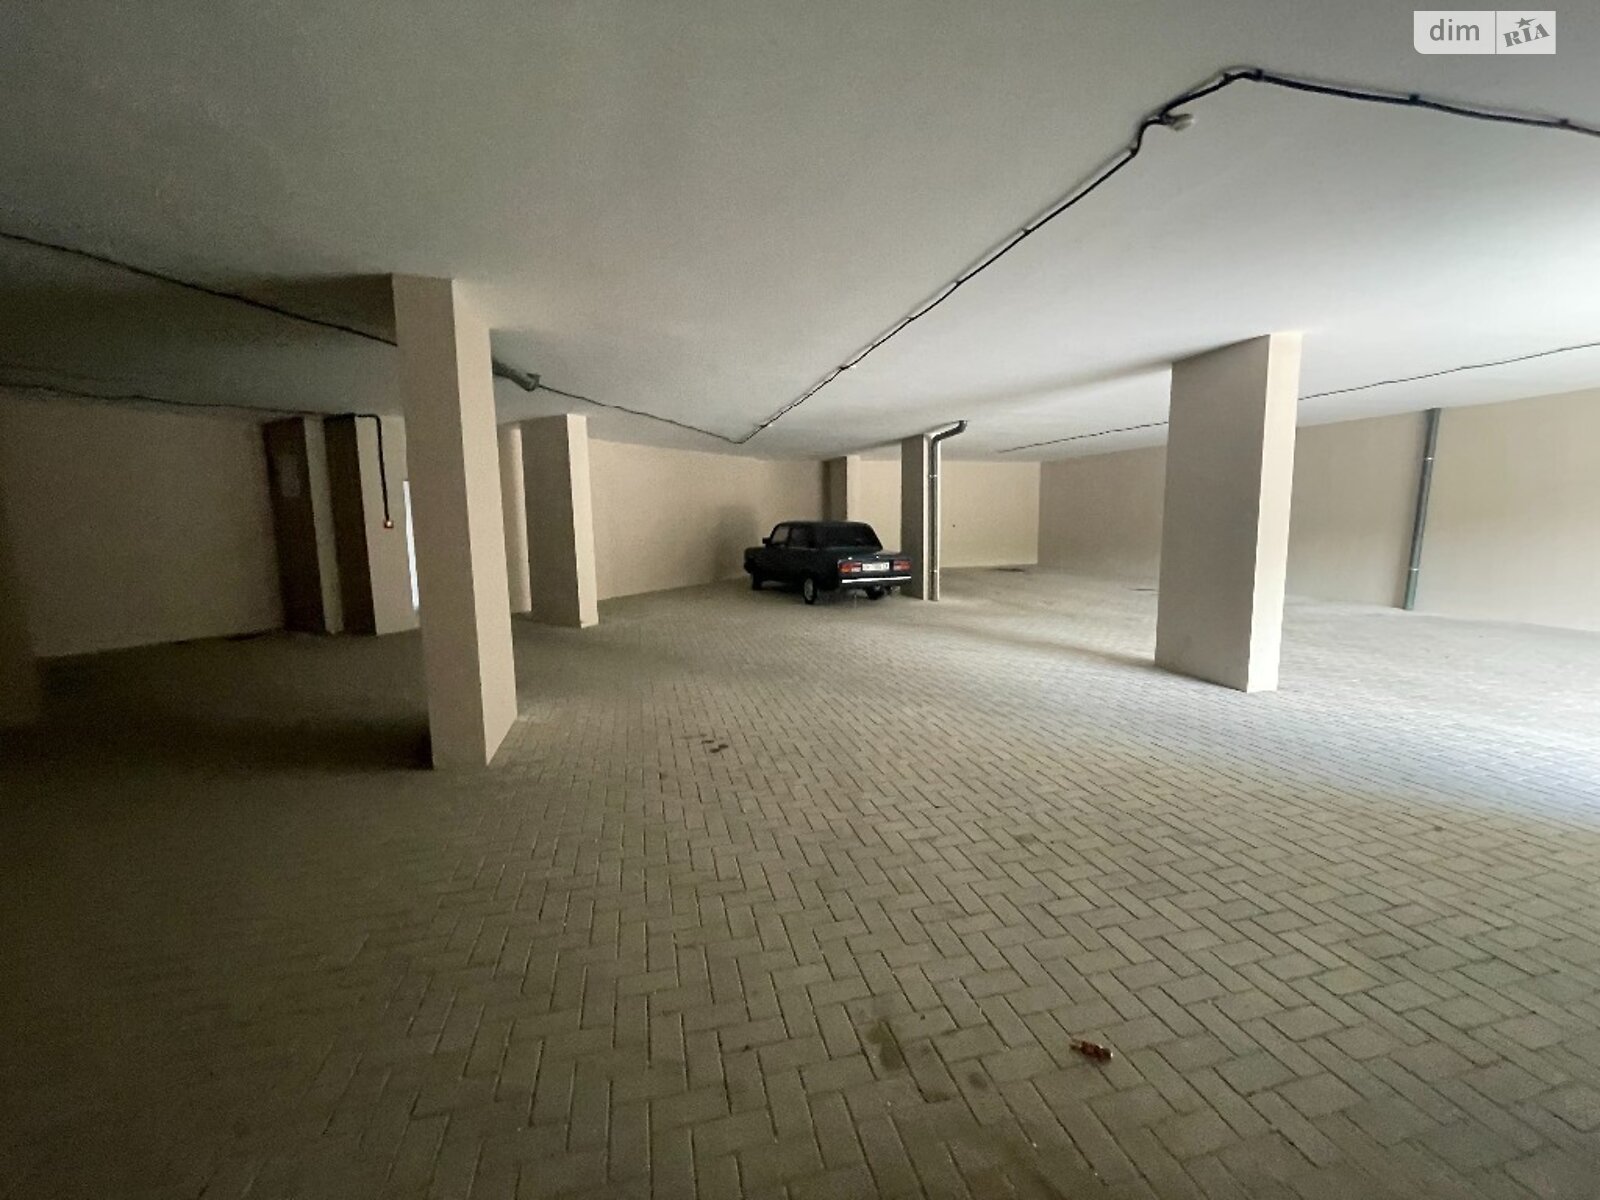 Место в подземном паркинге под легковое авто в Одессе, площадь 16.96 кв.м. фото 1